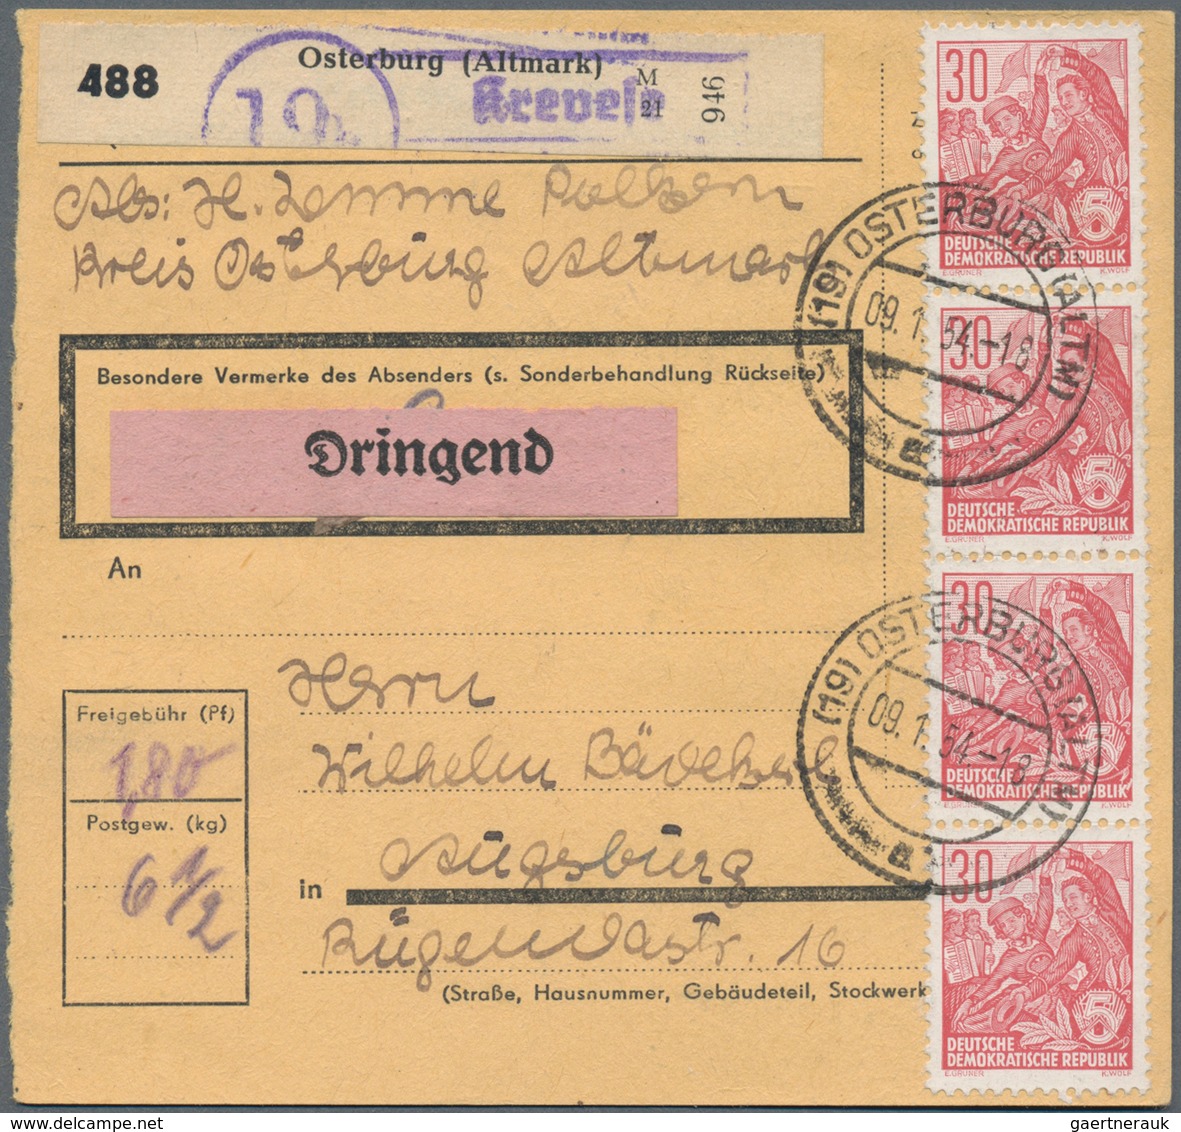 DDR: 1953/1961, meist bis 1955, Posten von ca. 250 Briefen und Karten mit Frankaturen Sondermarken u